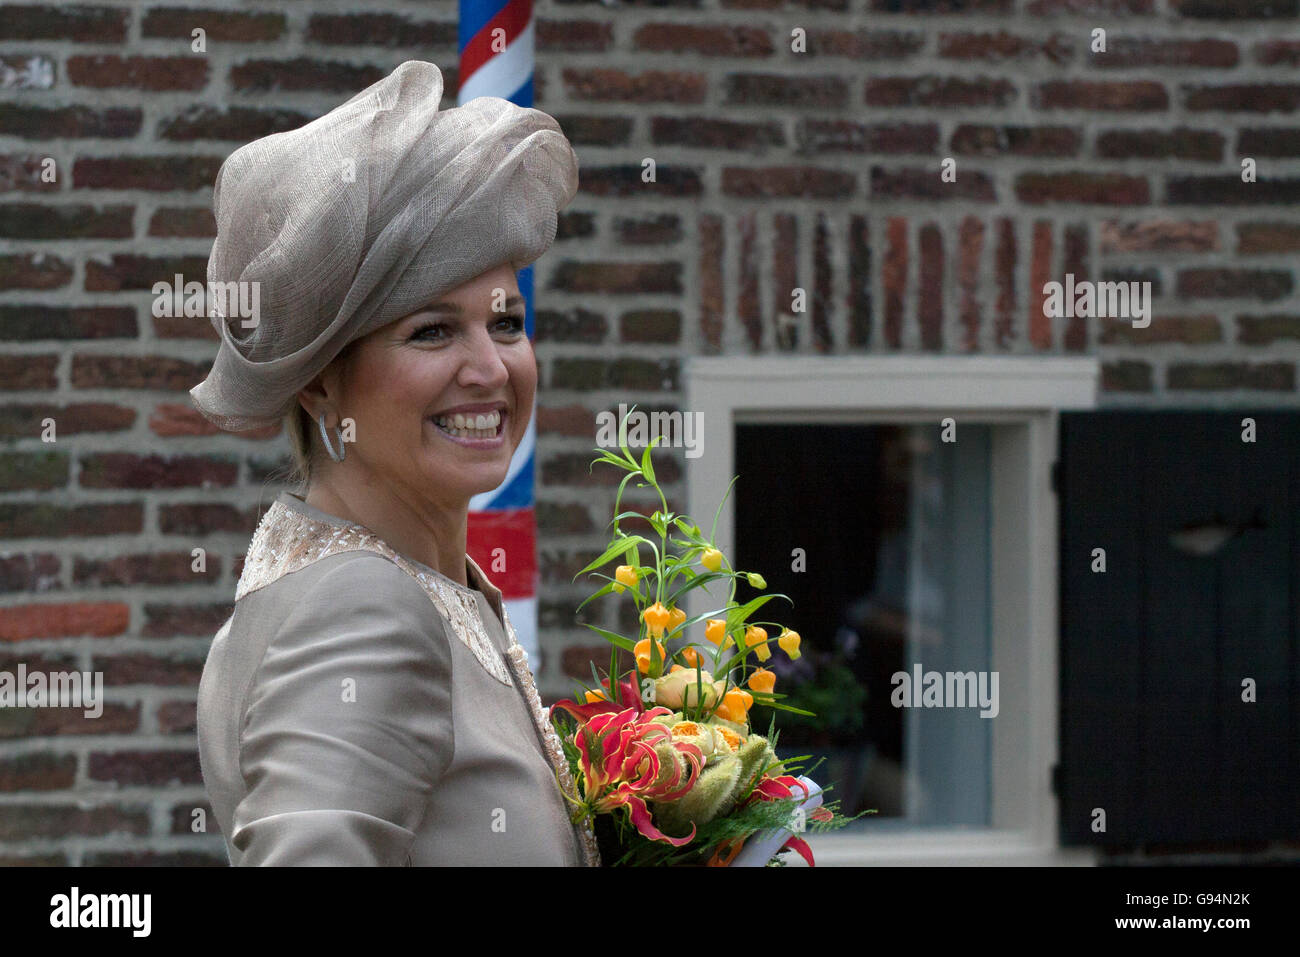 ENKHUIZEN, PAÍSES BAJOS - Junio 19, 2013: la Reina de los Países Bajos con Maxima flores durante una visita preliminar oficial Foto de stock